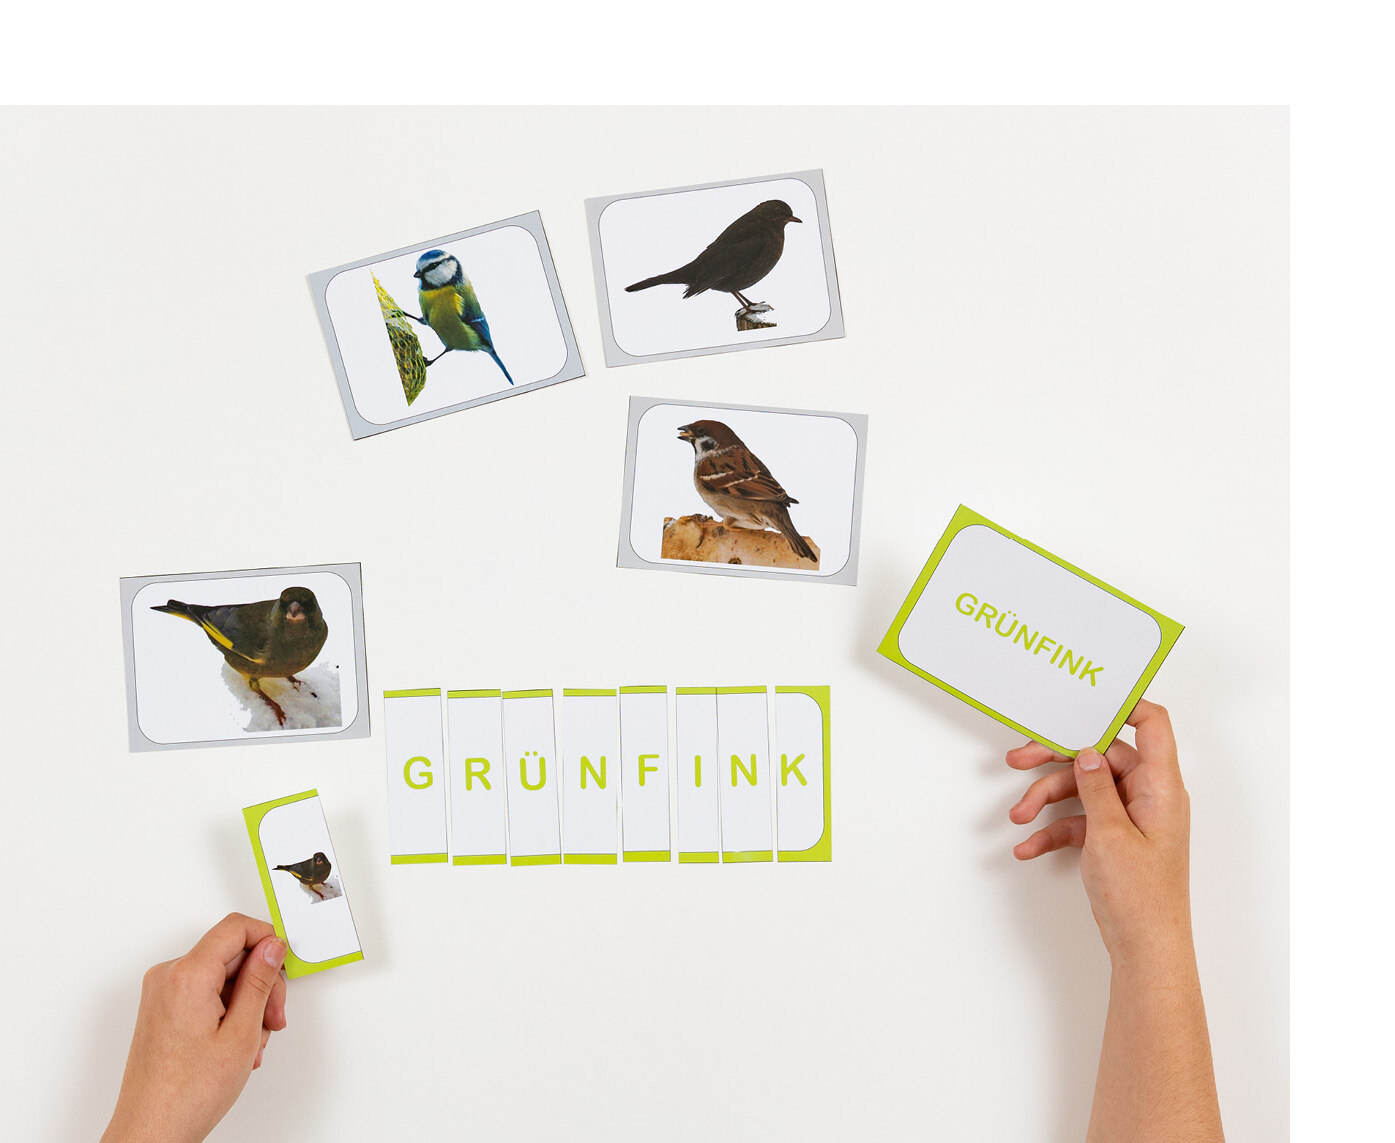 Wort- und Bildkarten des Grünfink werden von jemandem geordnet nebeneinander gelegt.